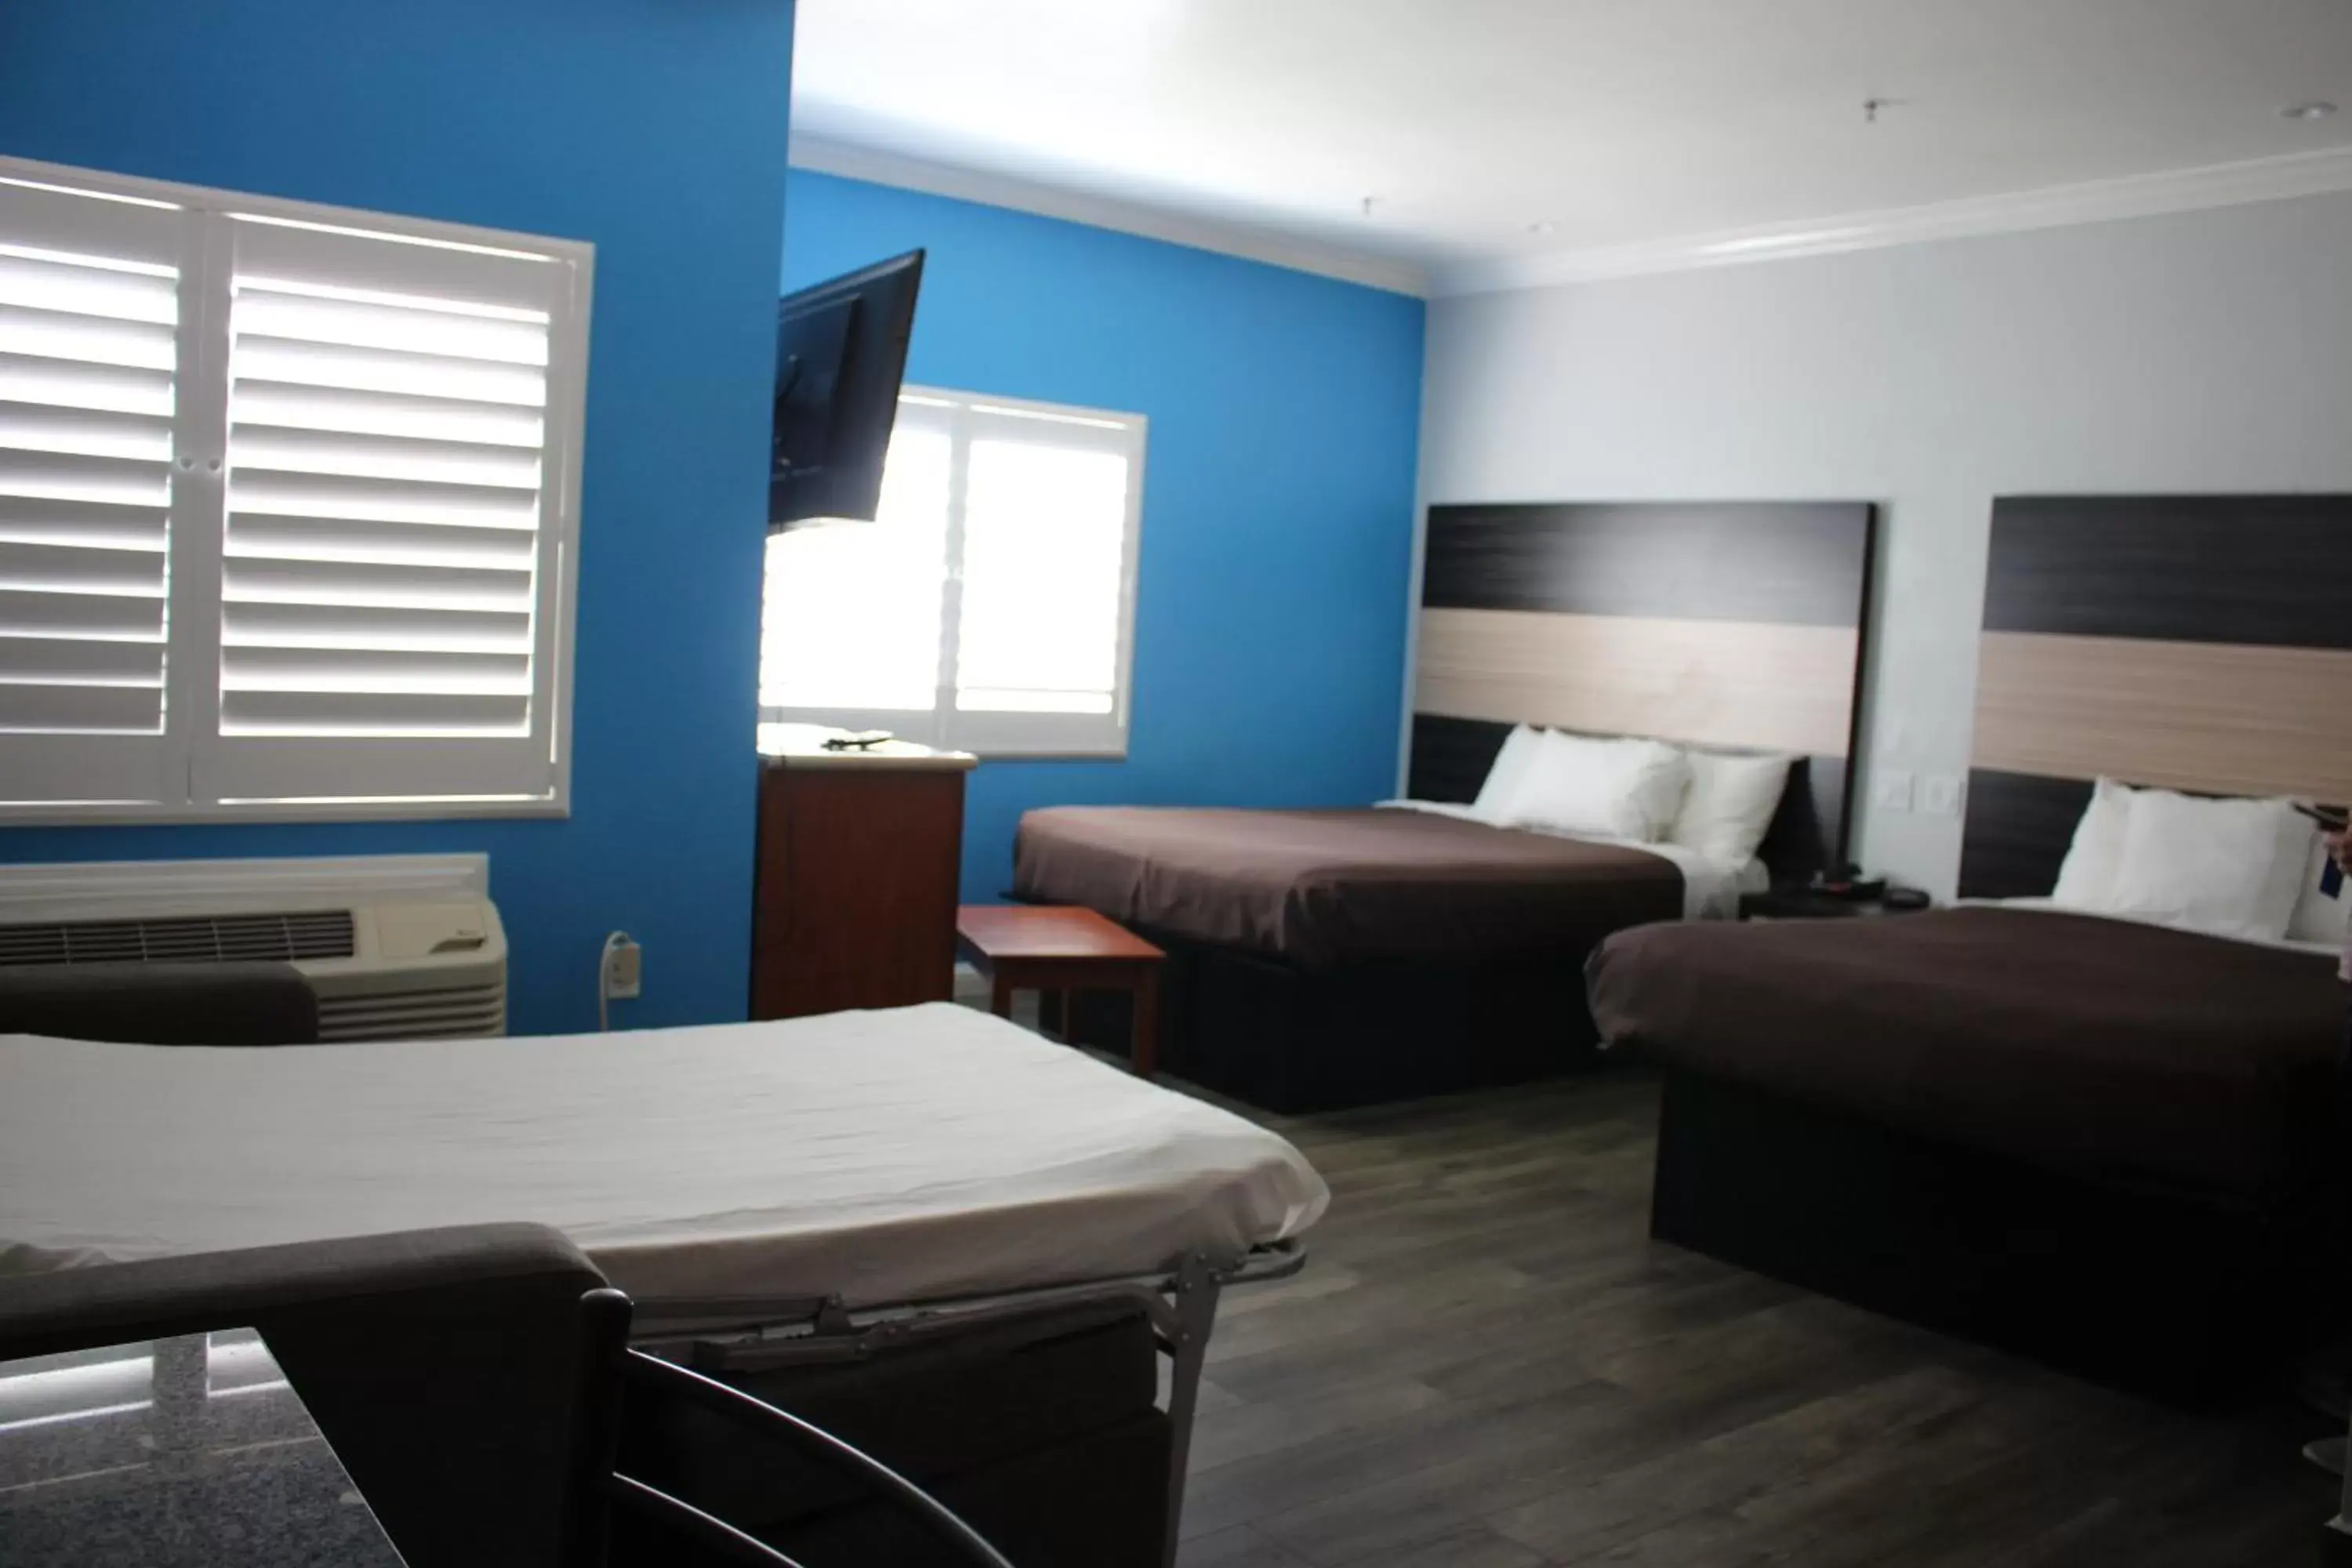 Bed in Rodeway Inn & Suites